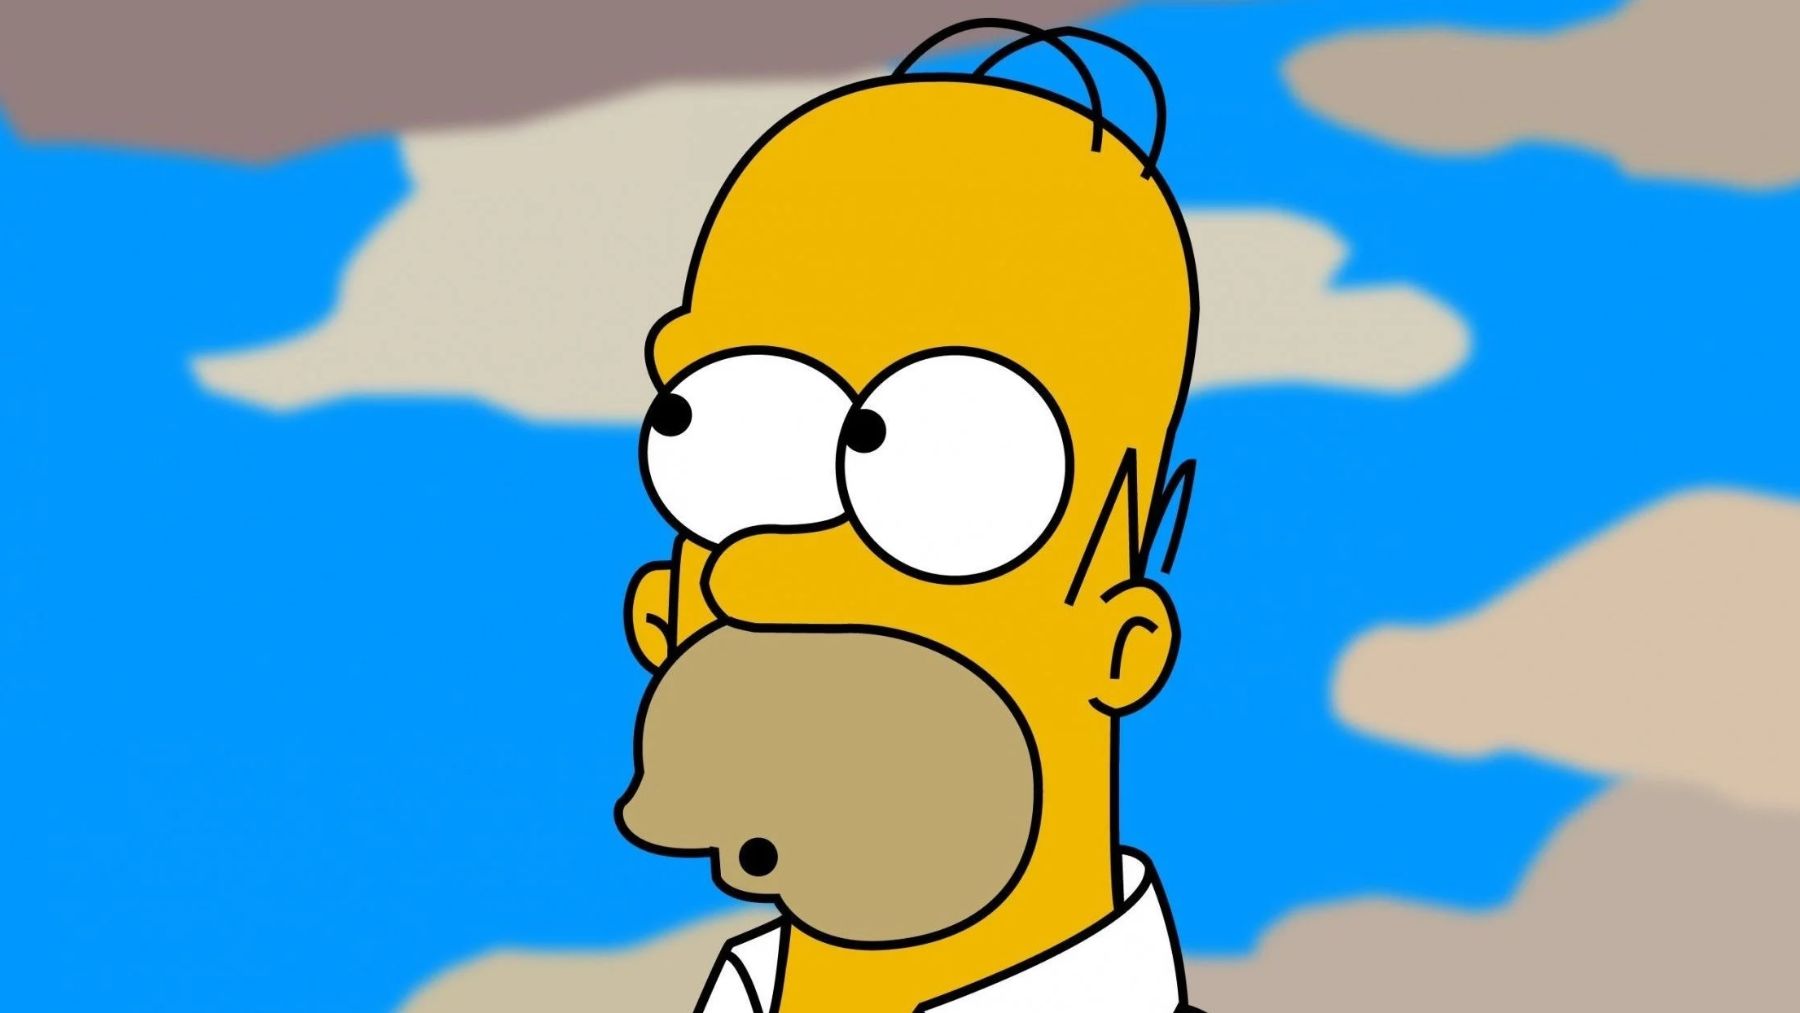 Descubre la teoría más sorprendente sobre Los Simpson